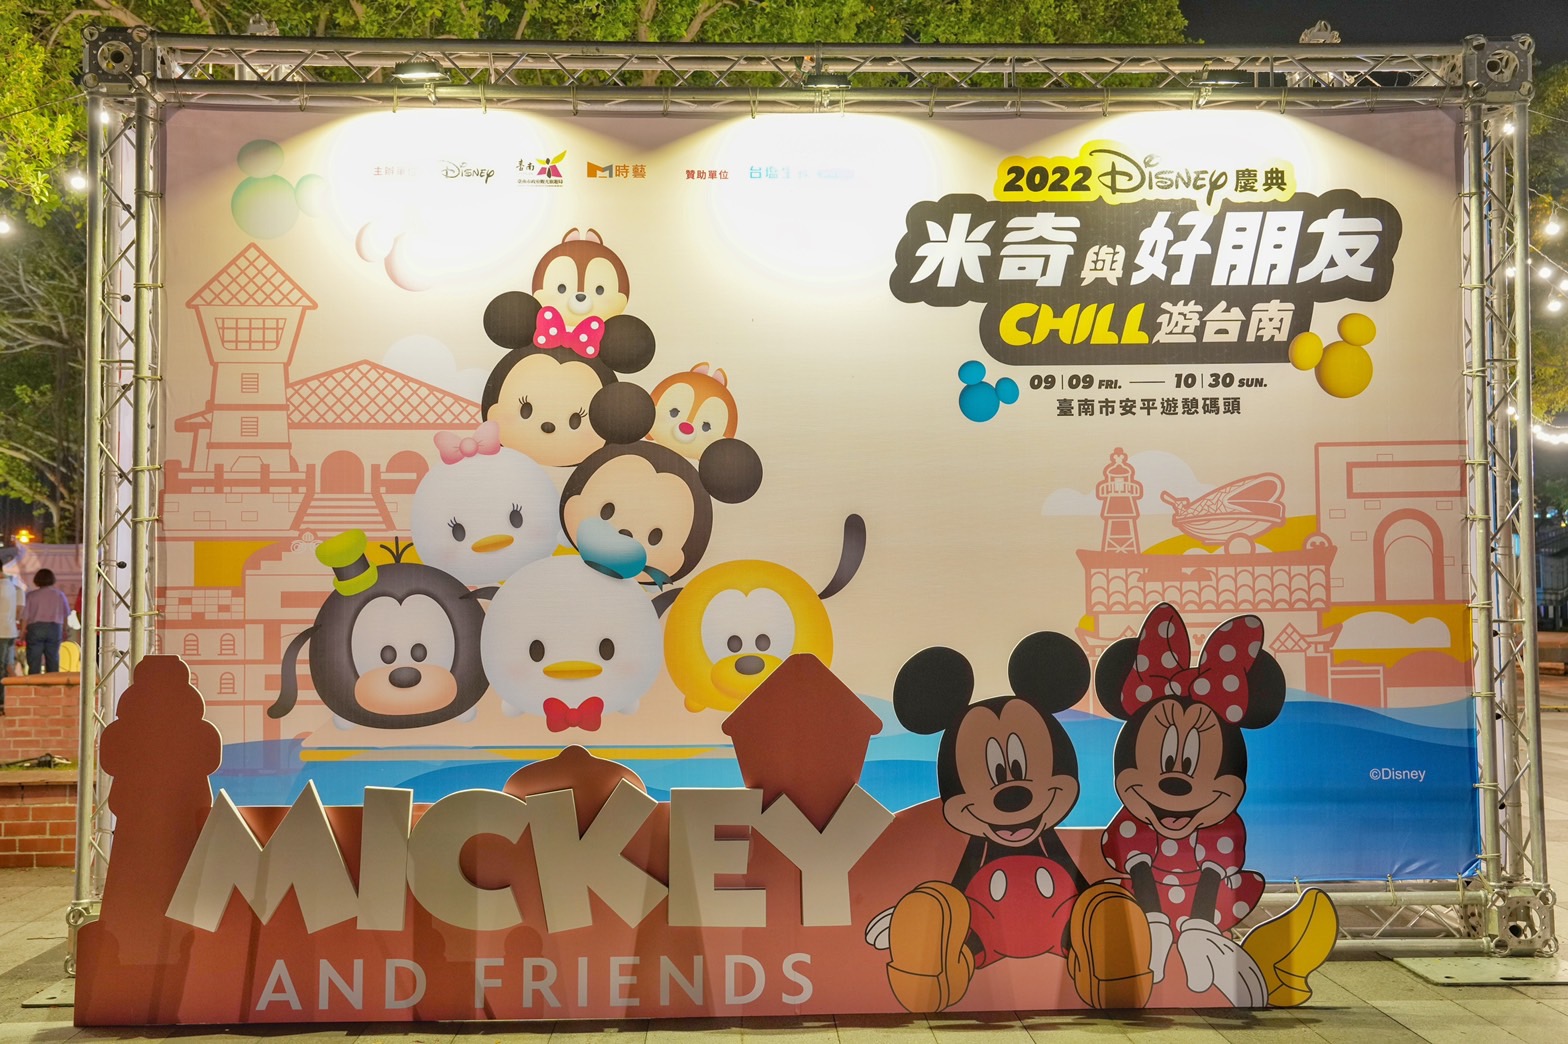 安平休憩碼頭 米奇與好朋友 CHILL遊台南